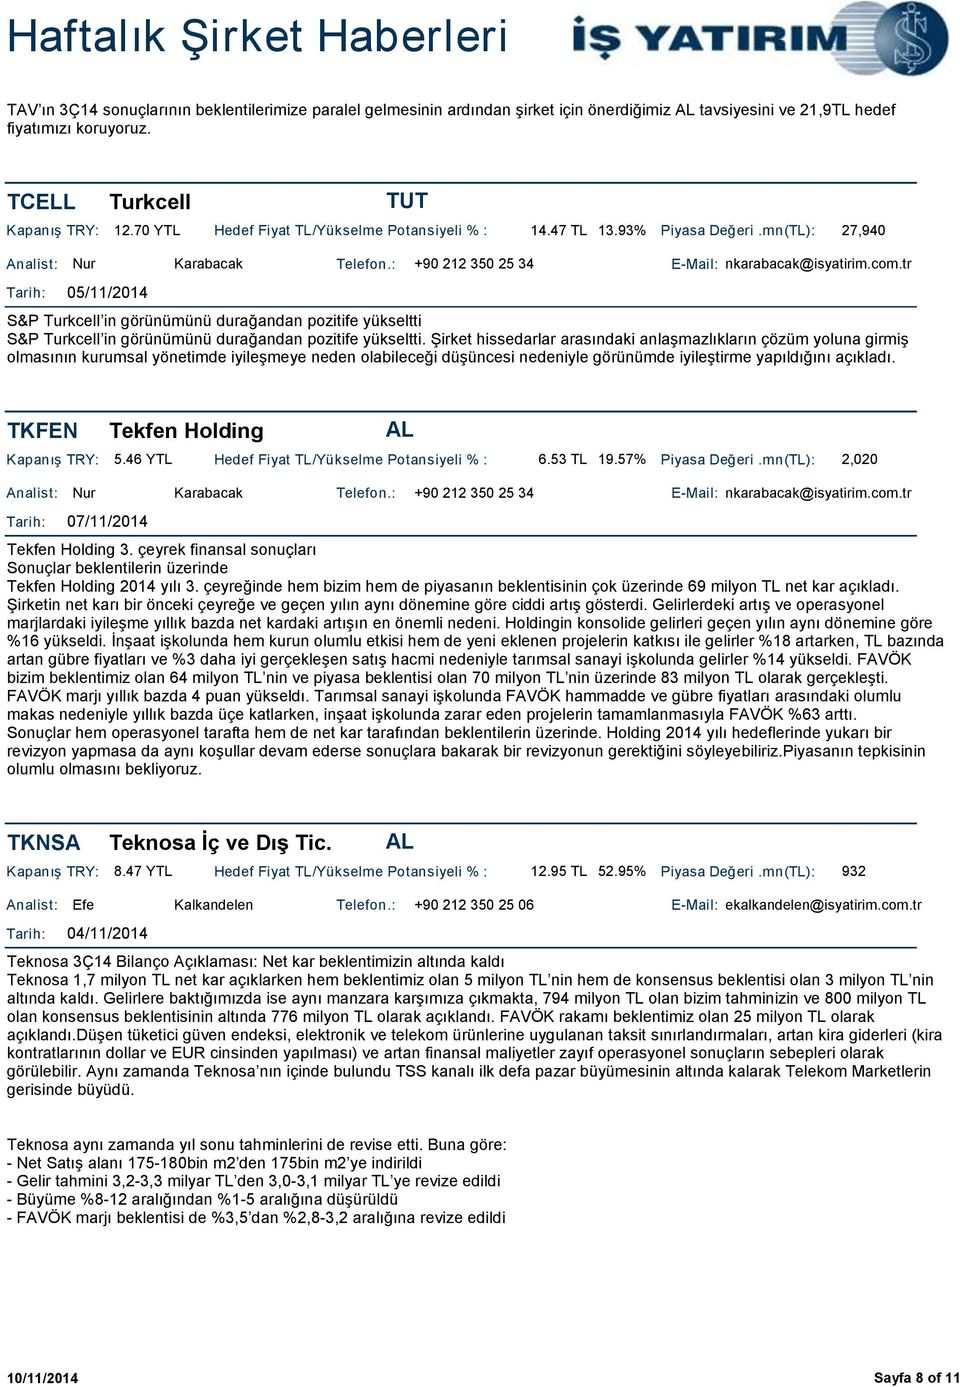 tr 05/11/2014 S&P Turkcell in görünümünü durağandan pozitife yükseltti S&P Turkcell in görünümünü durağandan pozitife yükseltti.